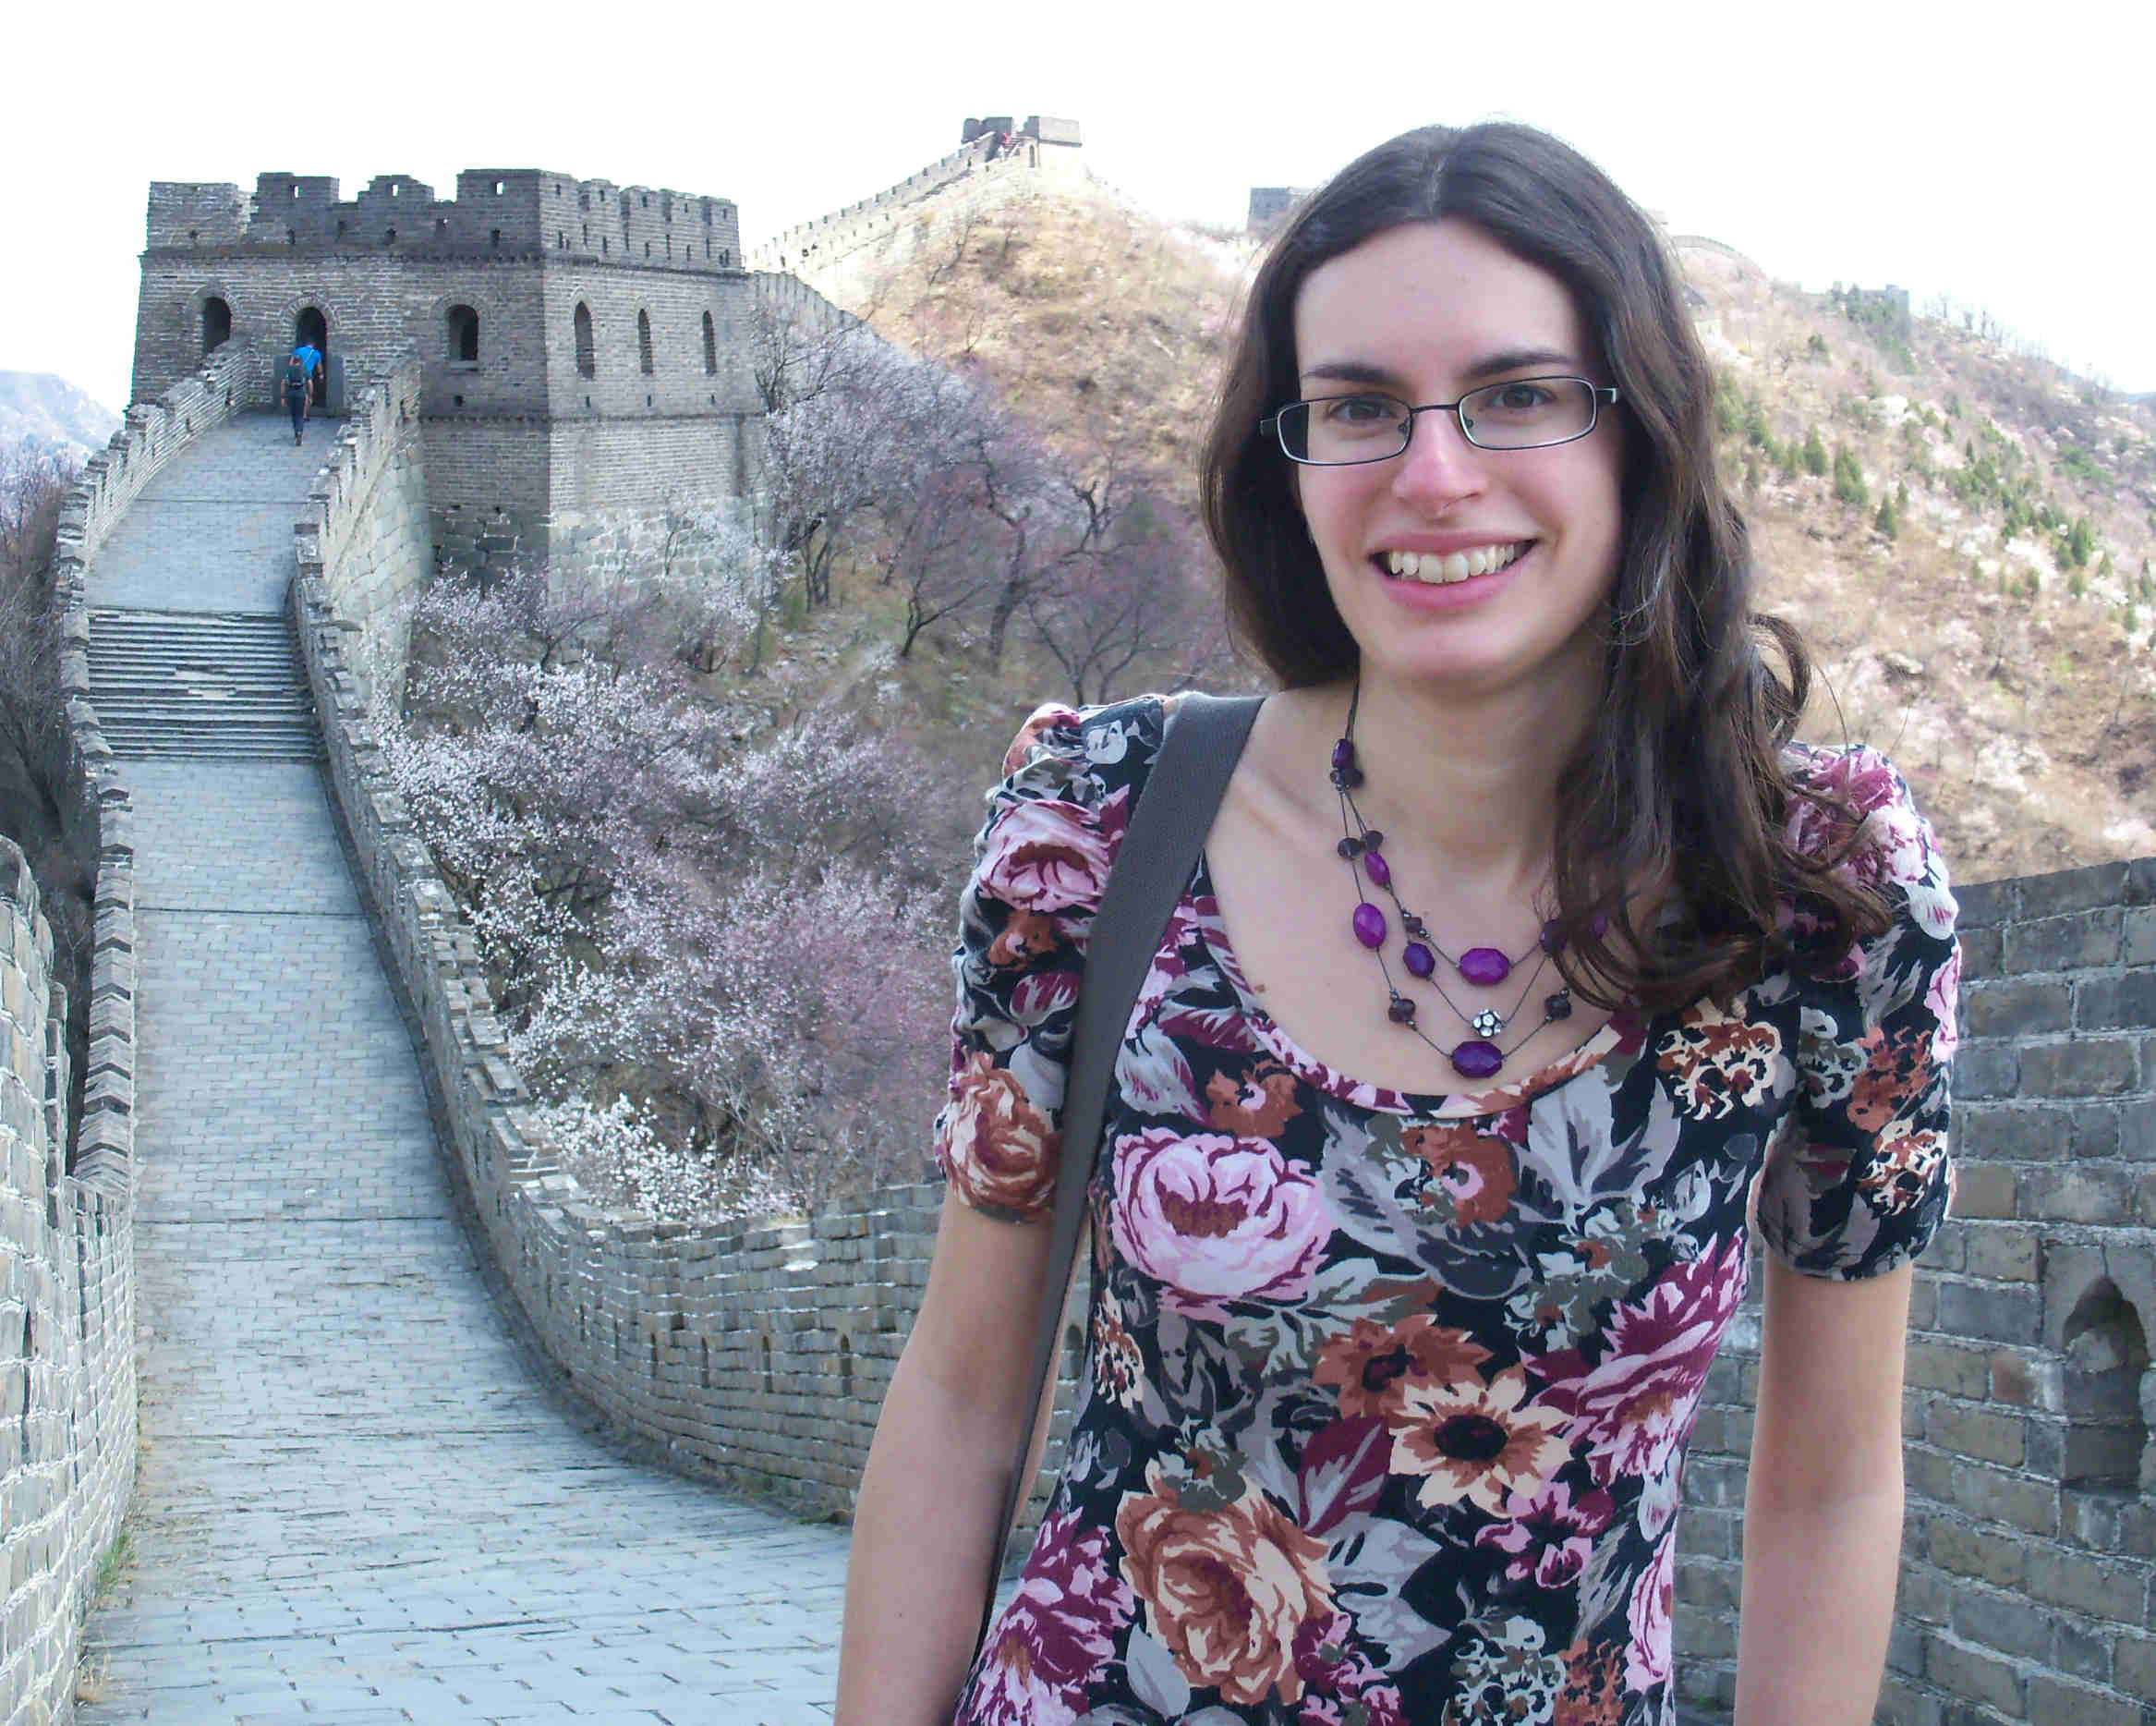 Nisha at the Great Wall of China